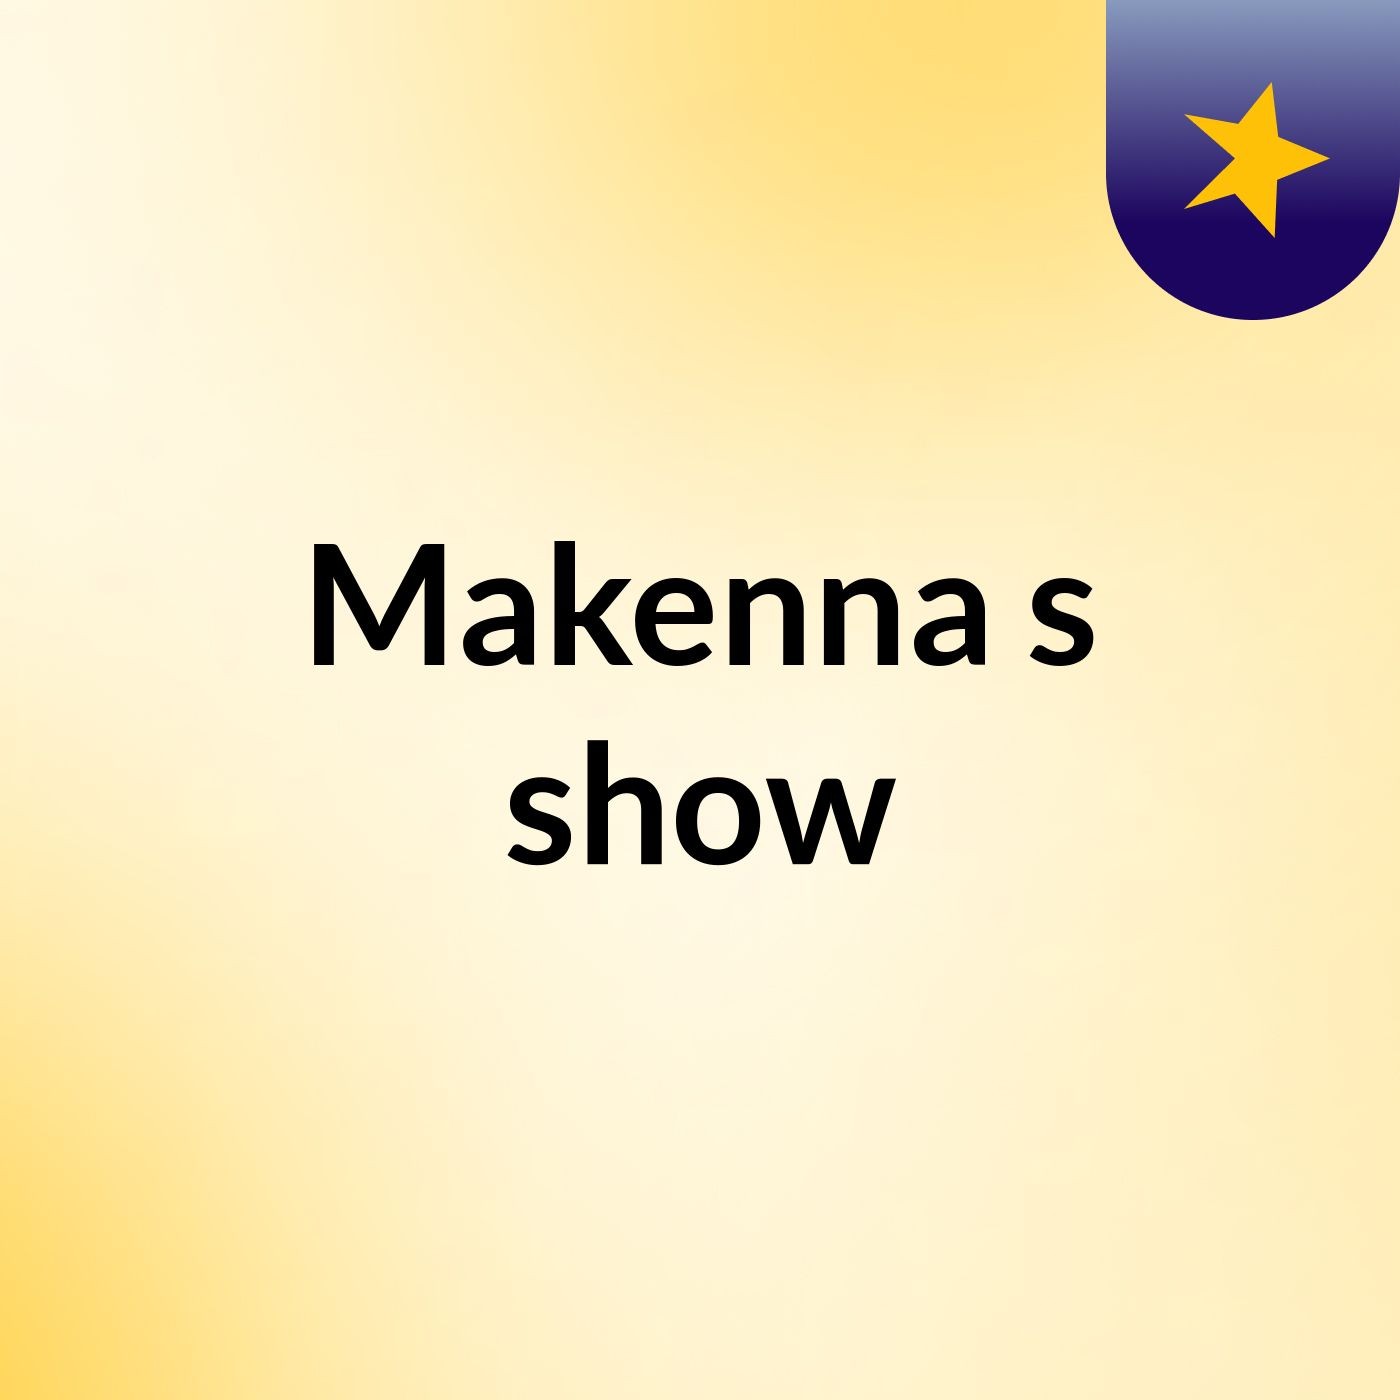 Makenna's show